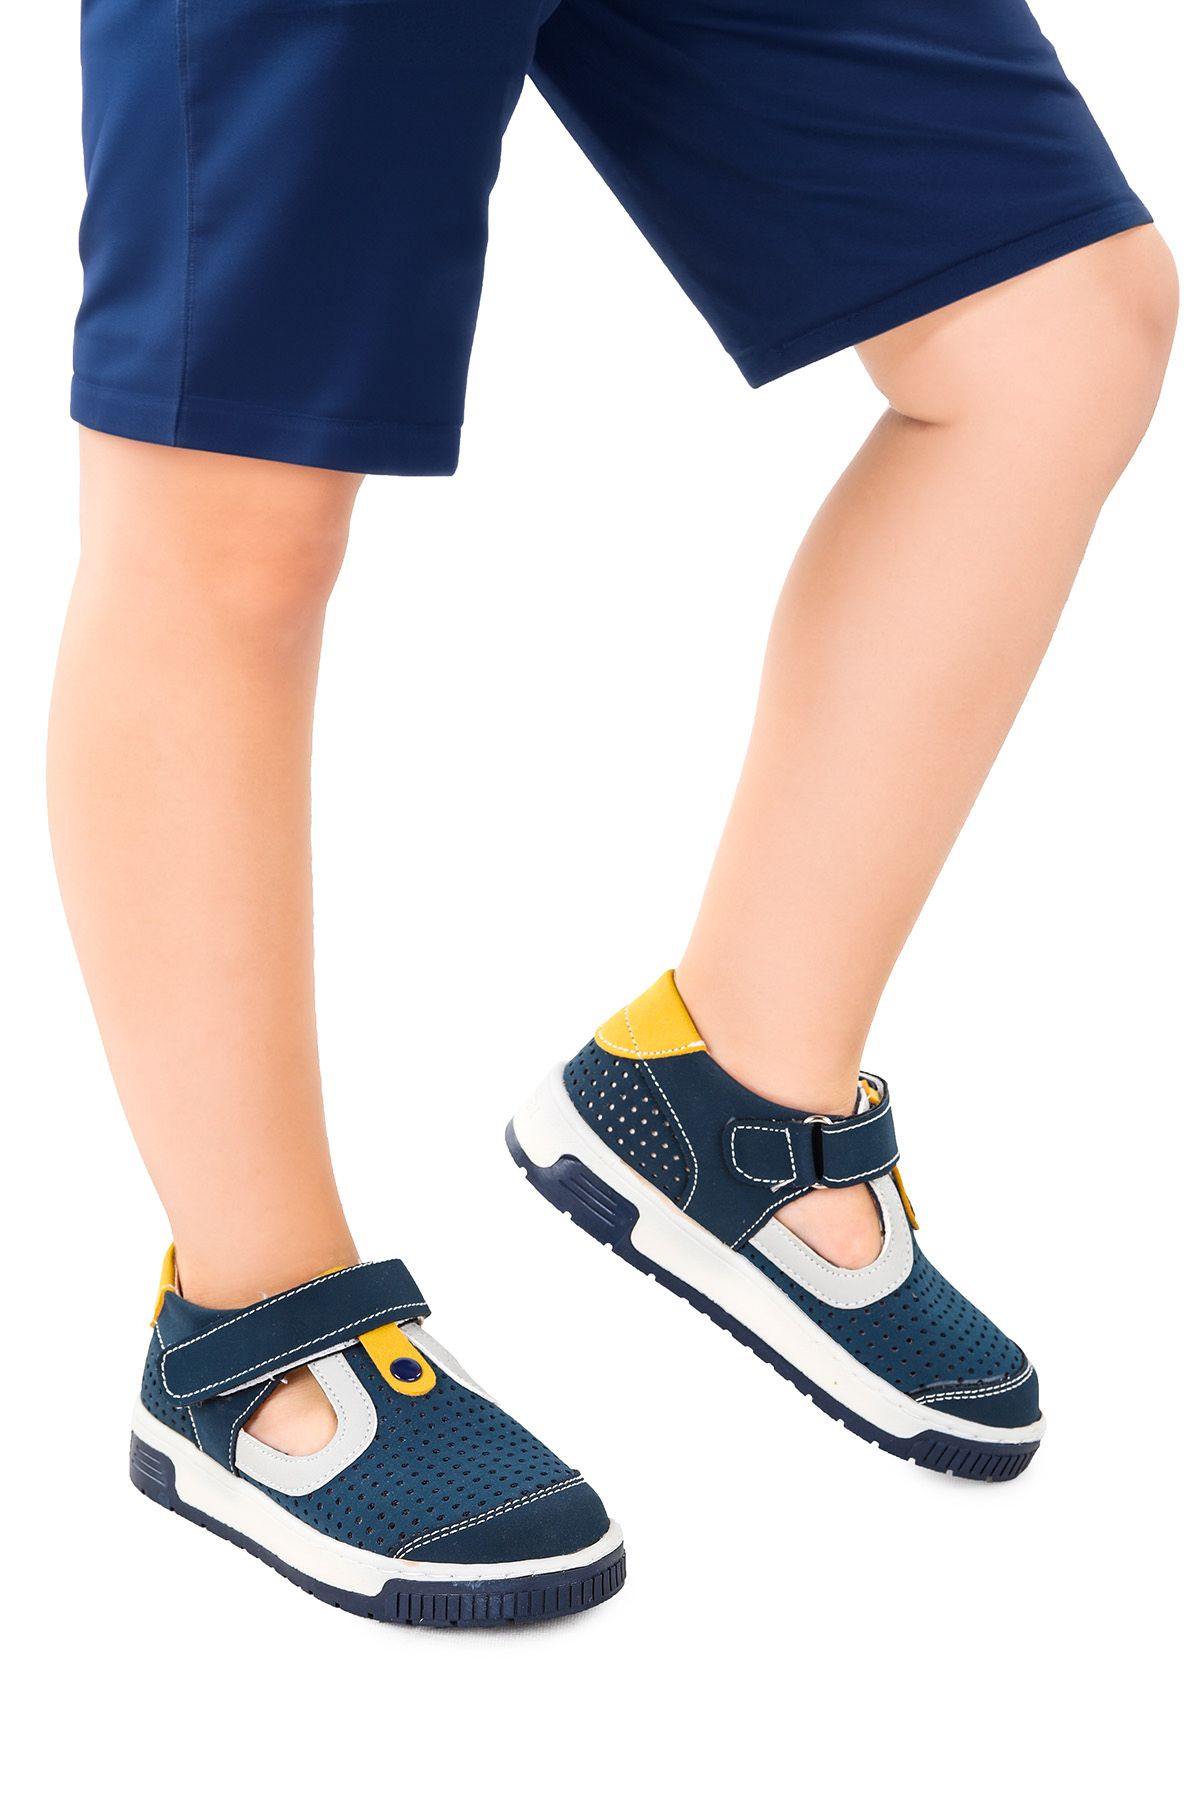 Kiko Kids Erkek Çocuk Günlük Ayakkabı